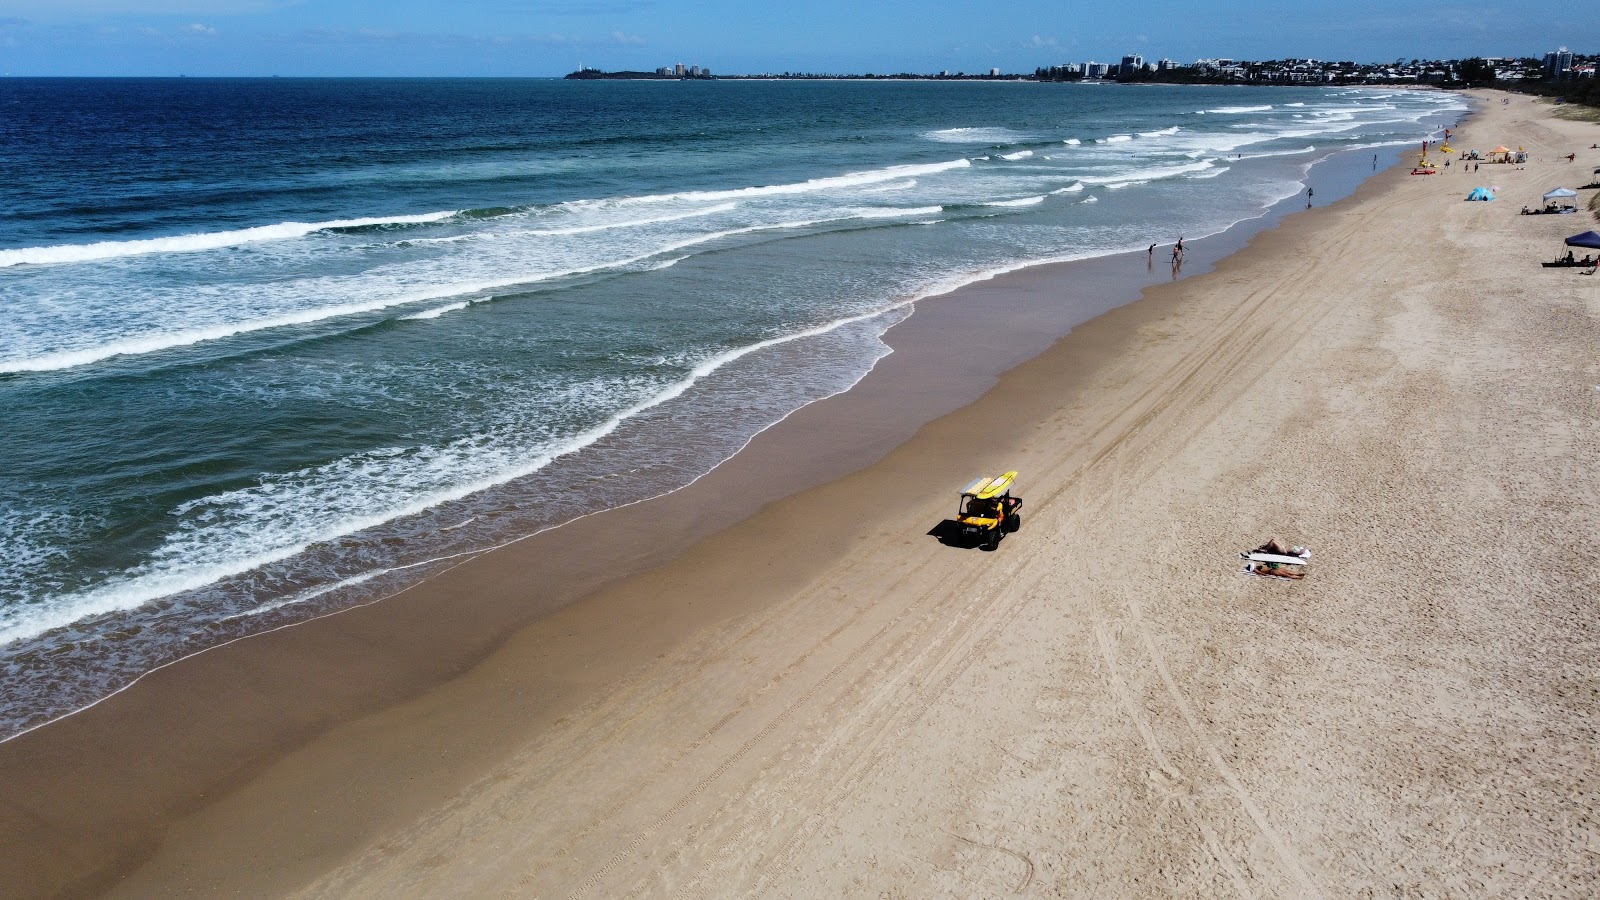 Fotografie cu Maroochydore Beach cu nivelul de curățenie înalt